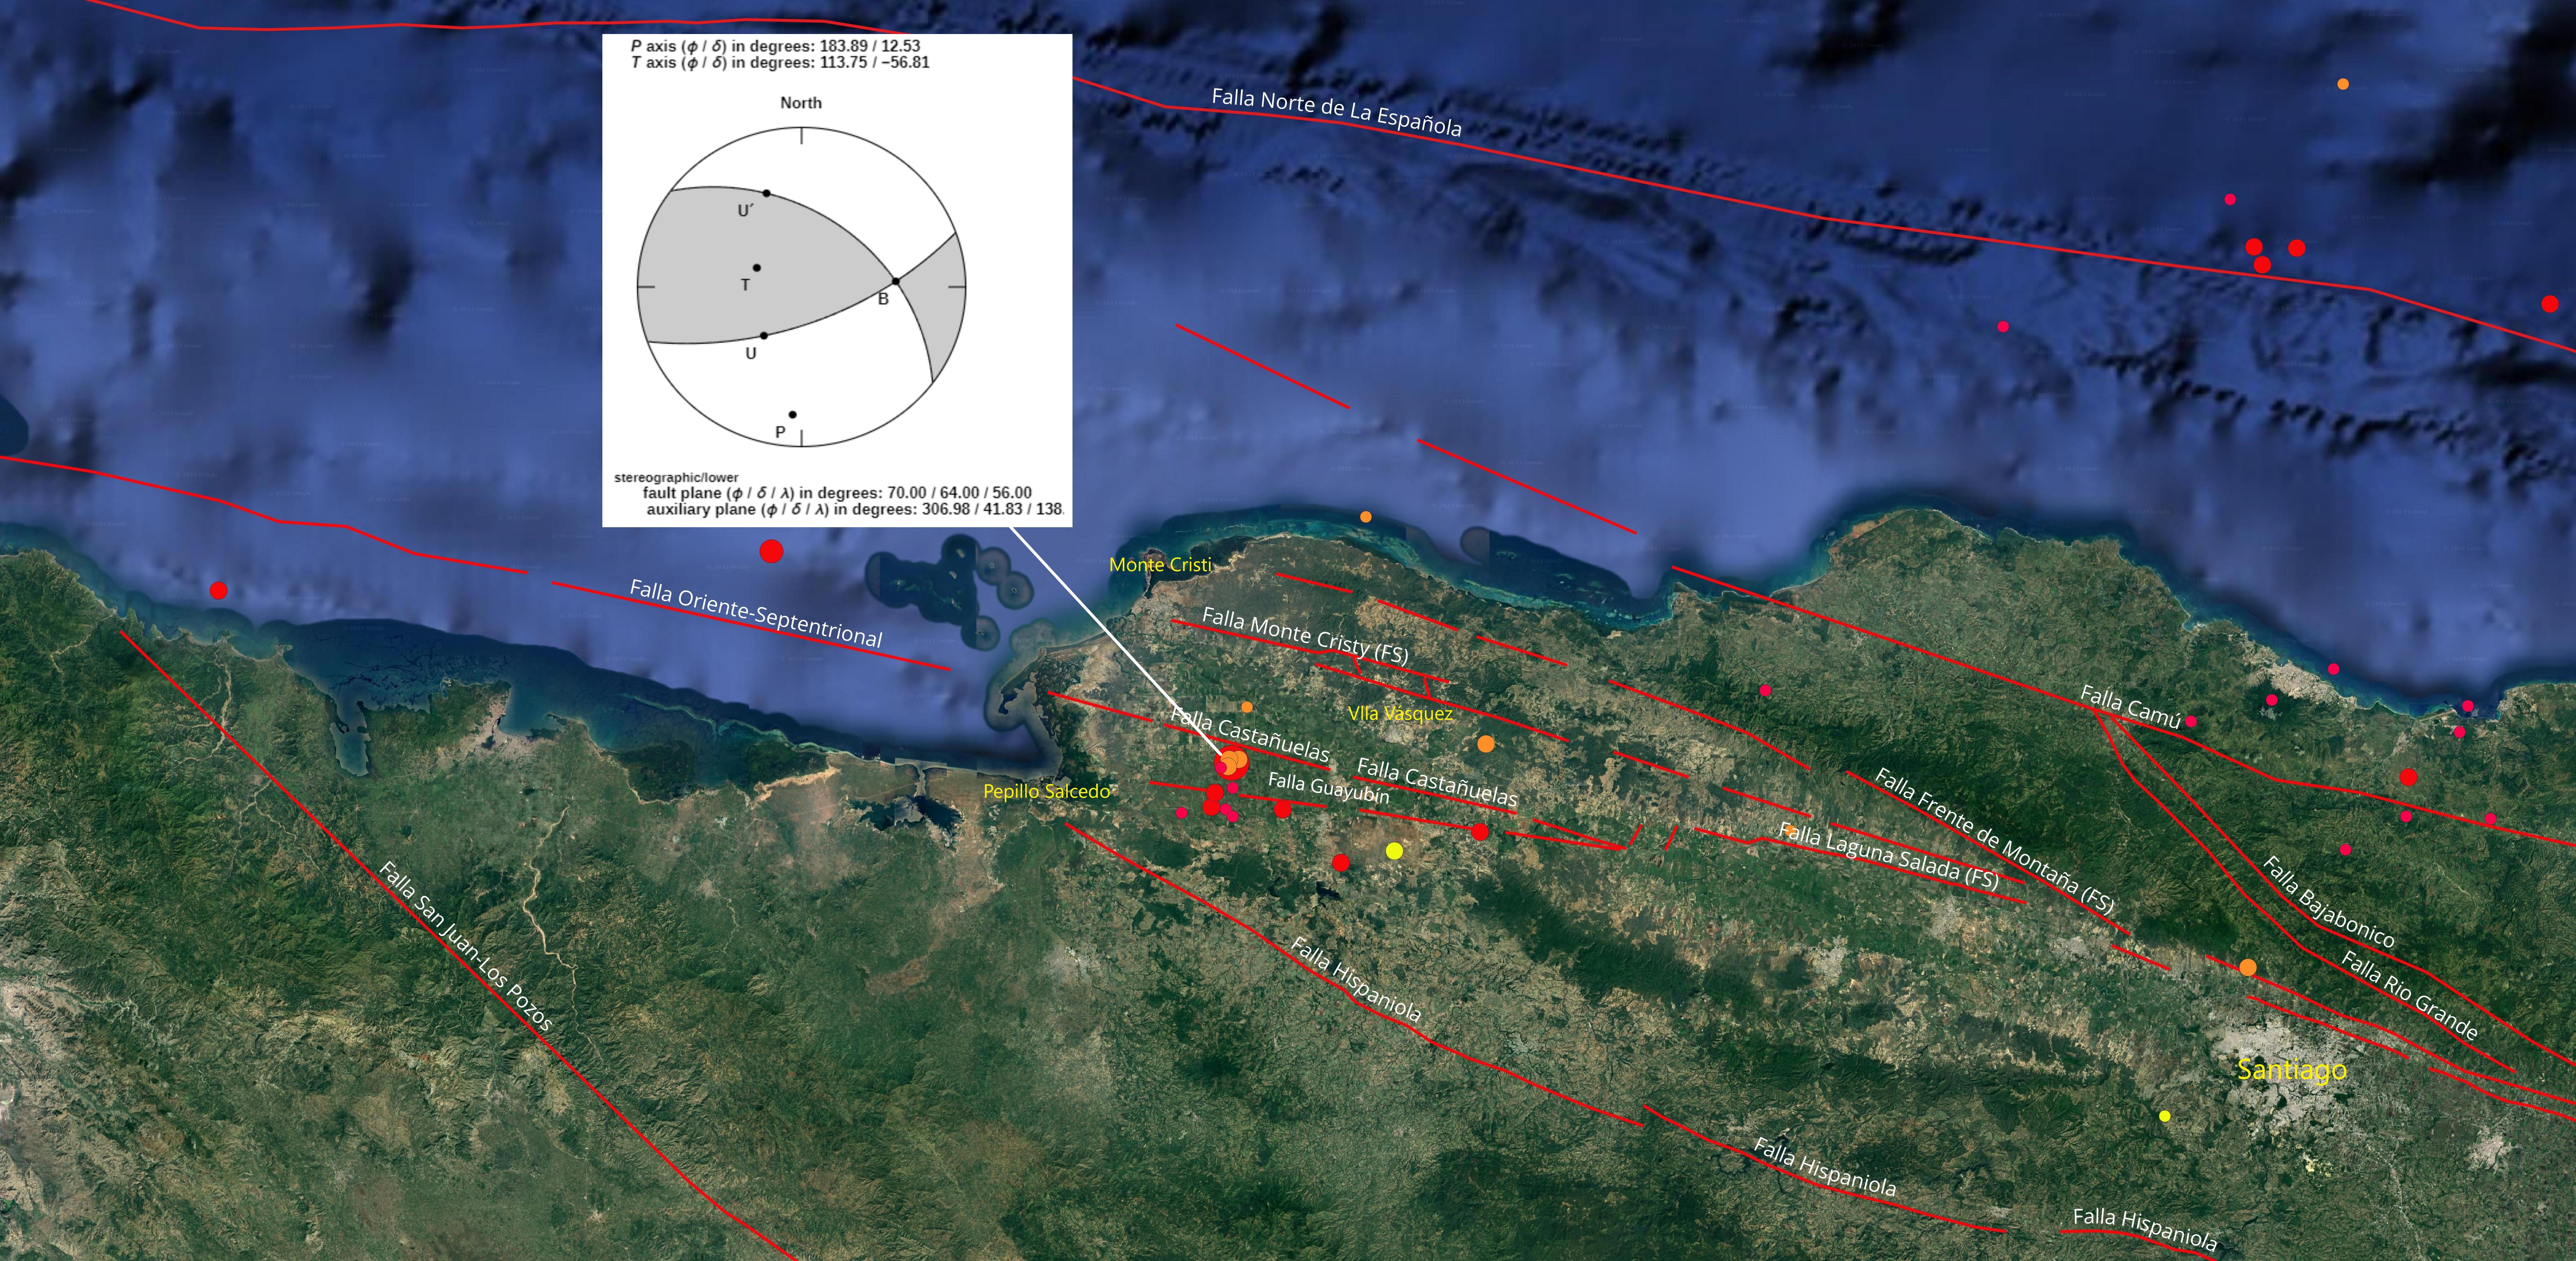 Imagen N° 3: Detalle del evento del 10 de noviembre, Ml 5.1, 14 km de profundidad. y sus réplicas. Se muestra en recuadro el mecanismo focal (Focmec), gráfico cortesía de Scherbaum et al, 2009. Con lineamientos rojos, las principales fallas de la región.